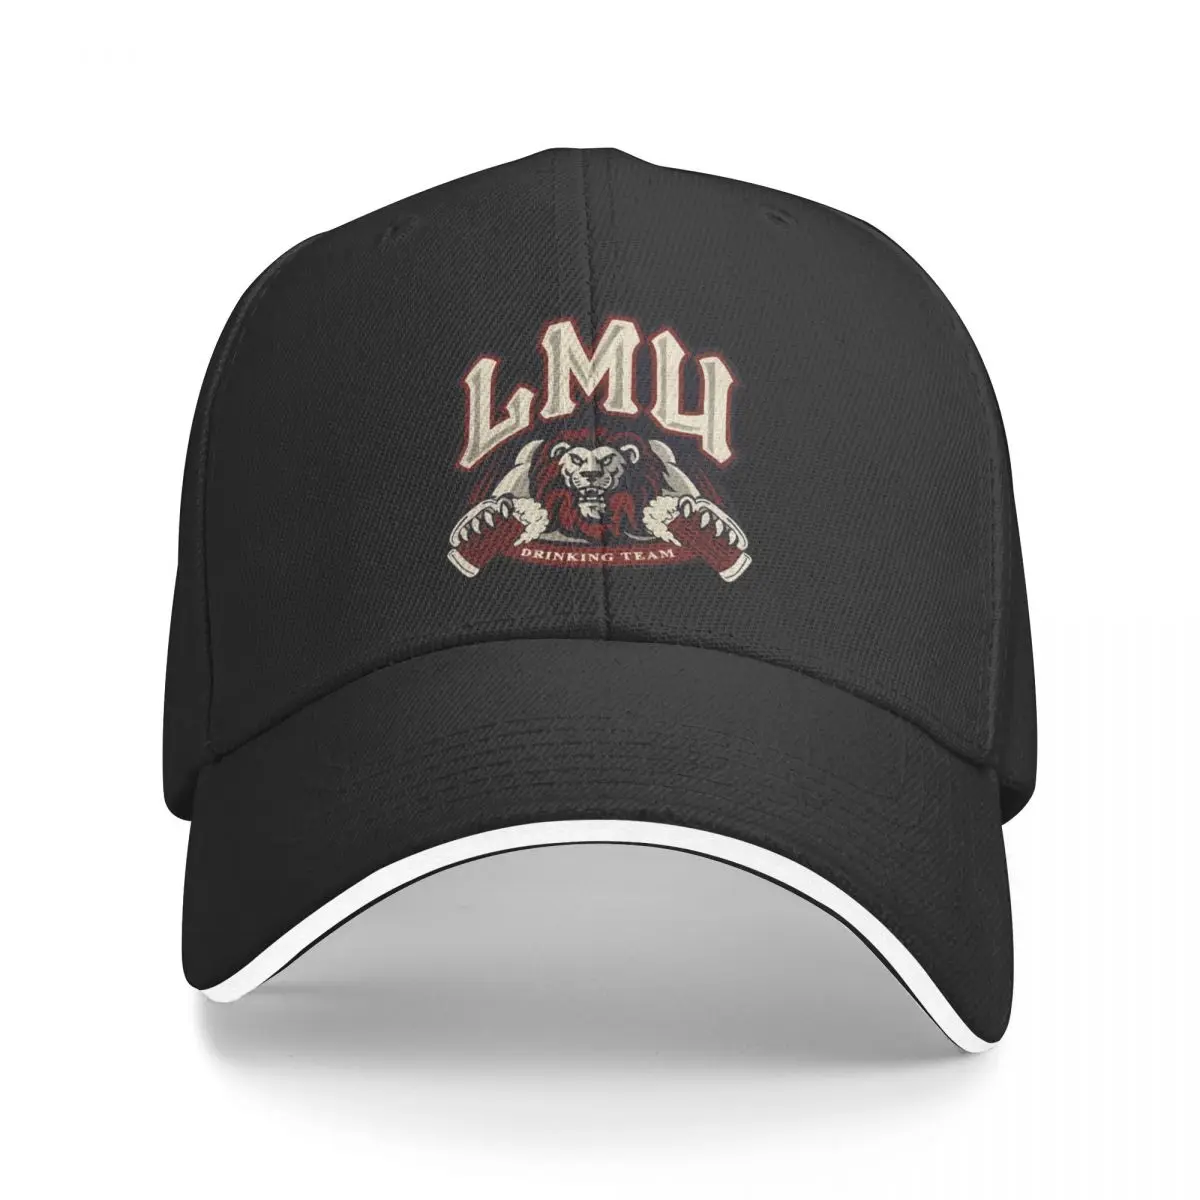 

Новинка LMU Drinking Team бейсбольная кепка хип-хоп кепки для грузовиков женские головные уборы мужские головные уборы